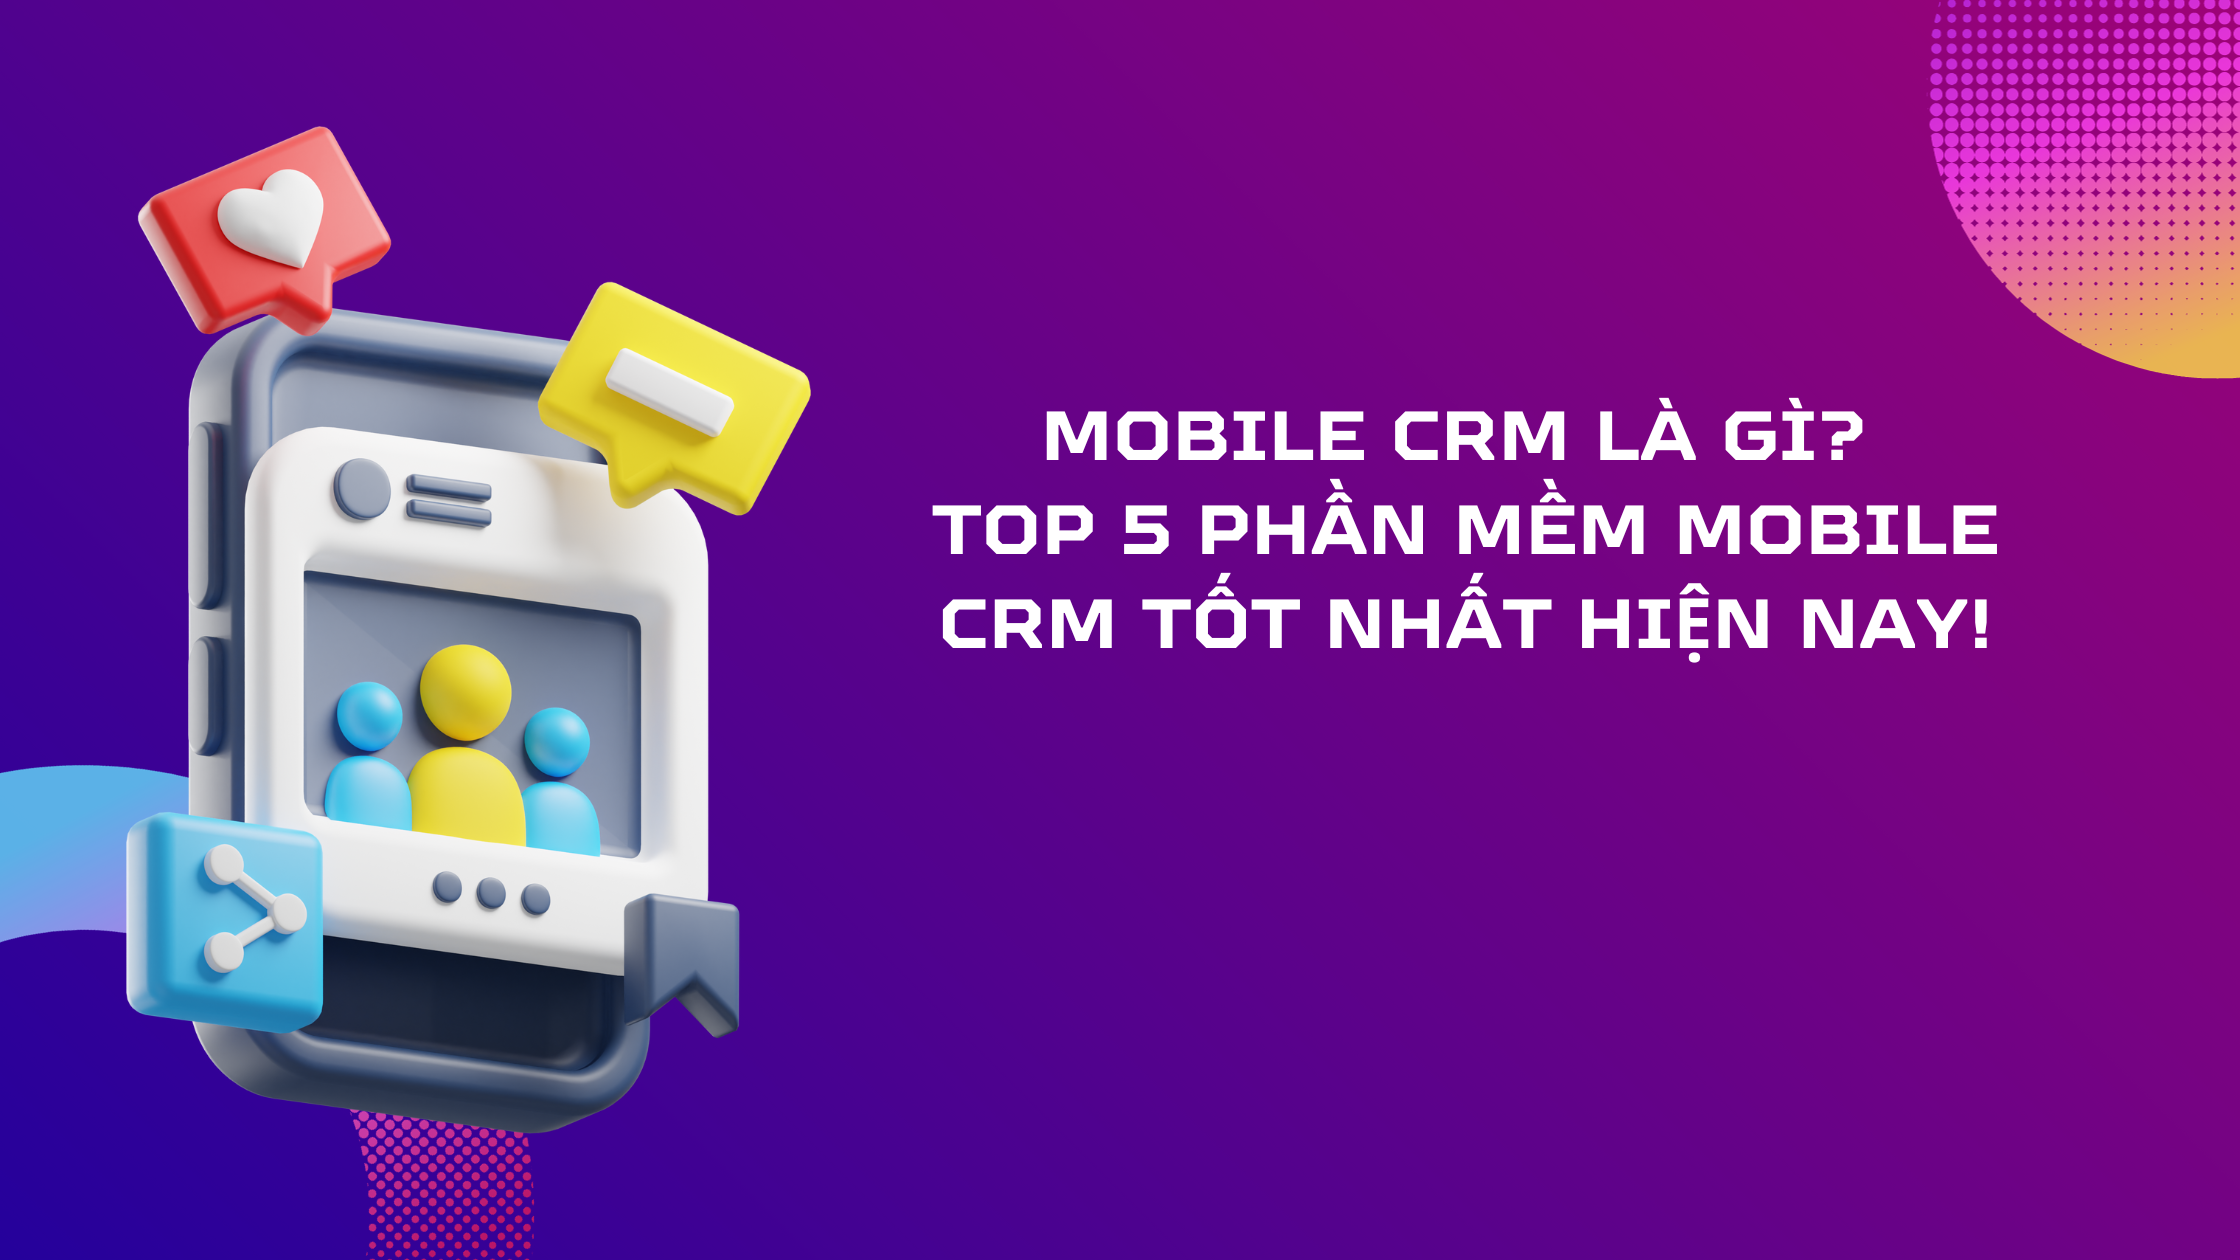 Mobile CRM là gì? Top 5 phần mềm mobile CRM tốt nhất hiện nay!